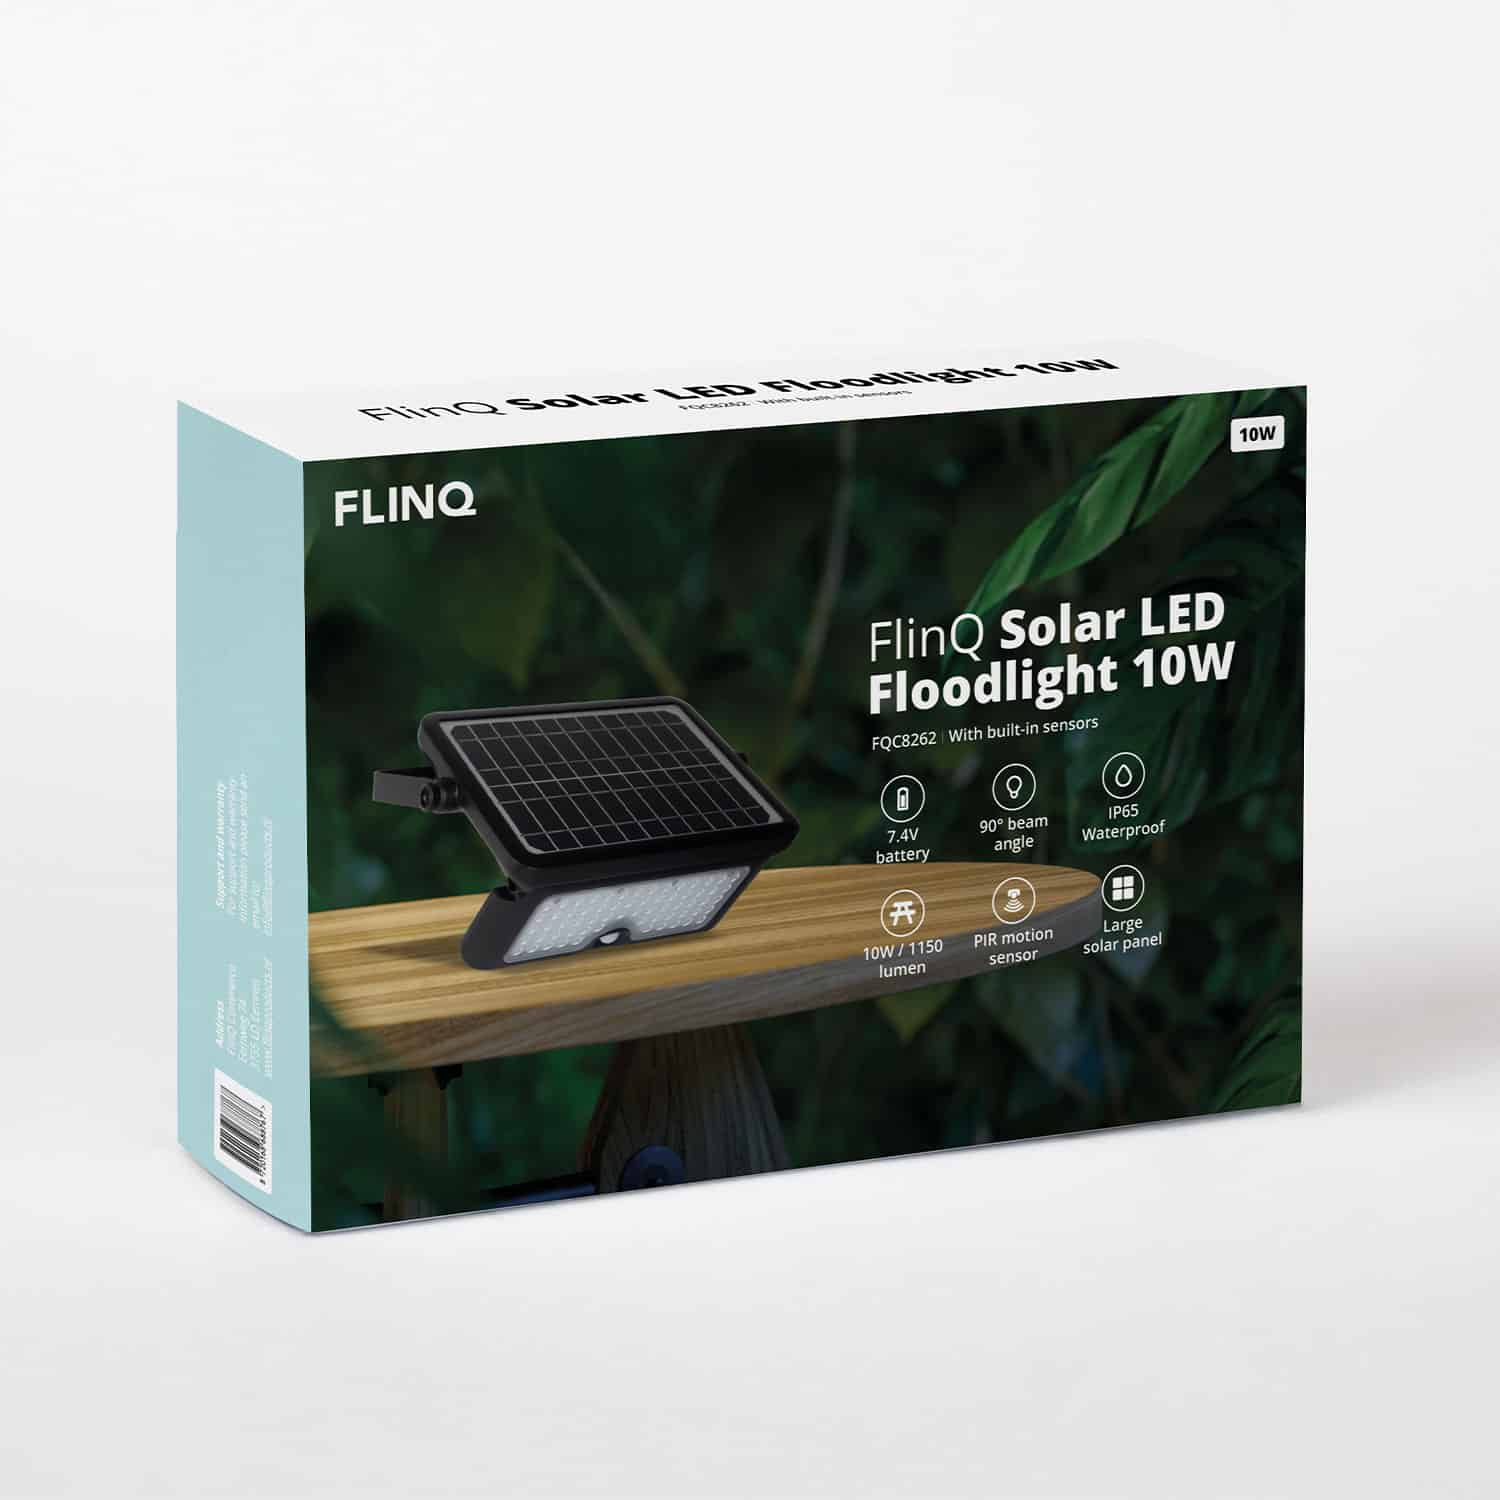 FlinQ-Solar-LED-Floodlight-10W-5